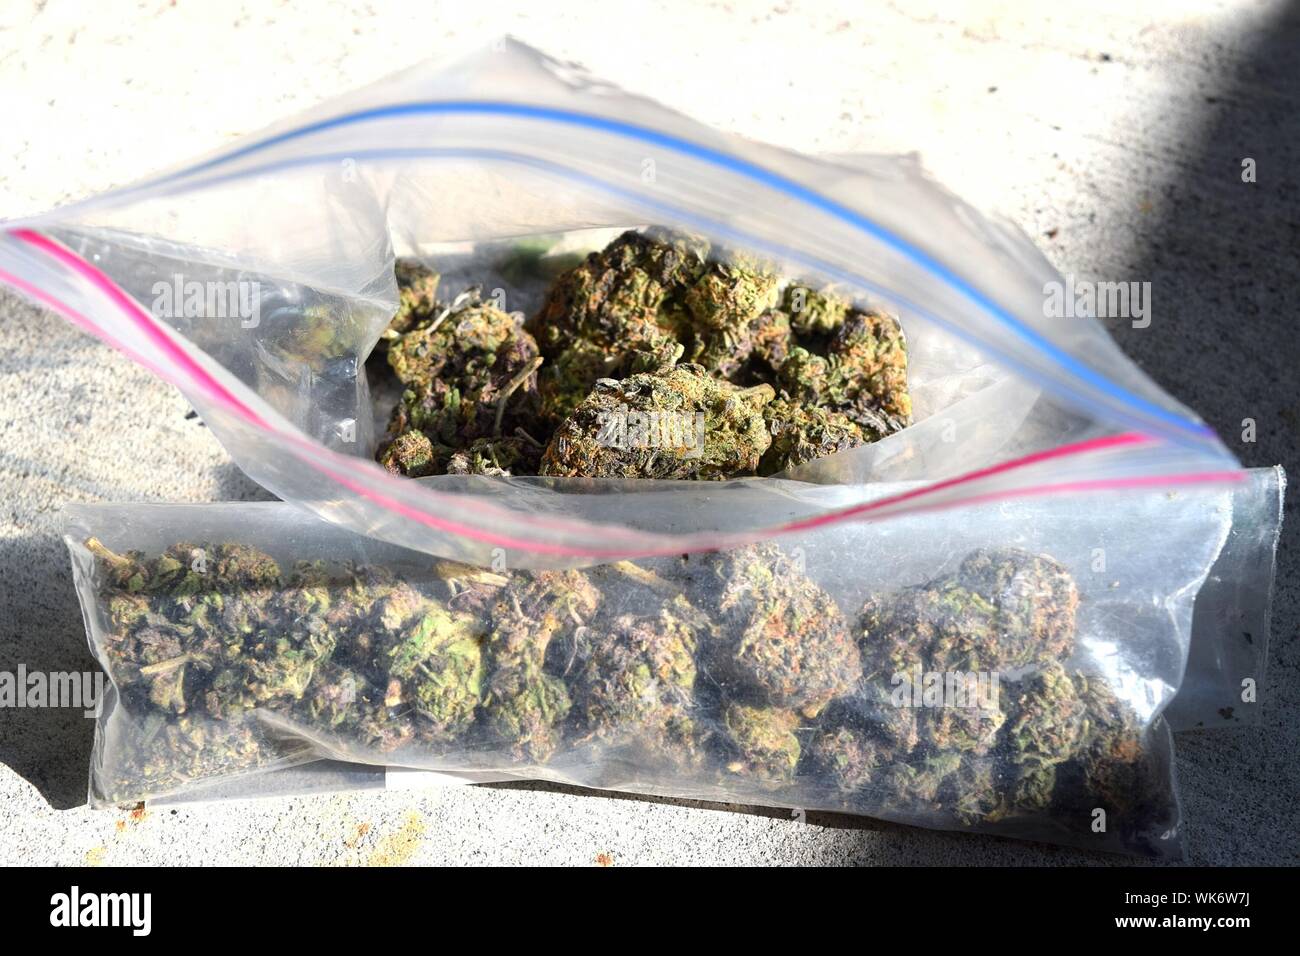 Cerca de la planta de cannabis en una bolsa de plástico Fotografía de stock  - Alamy